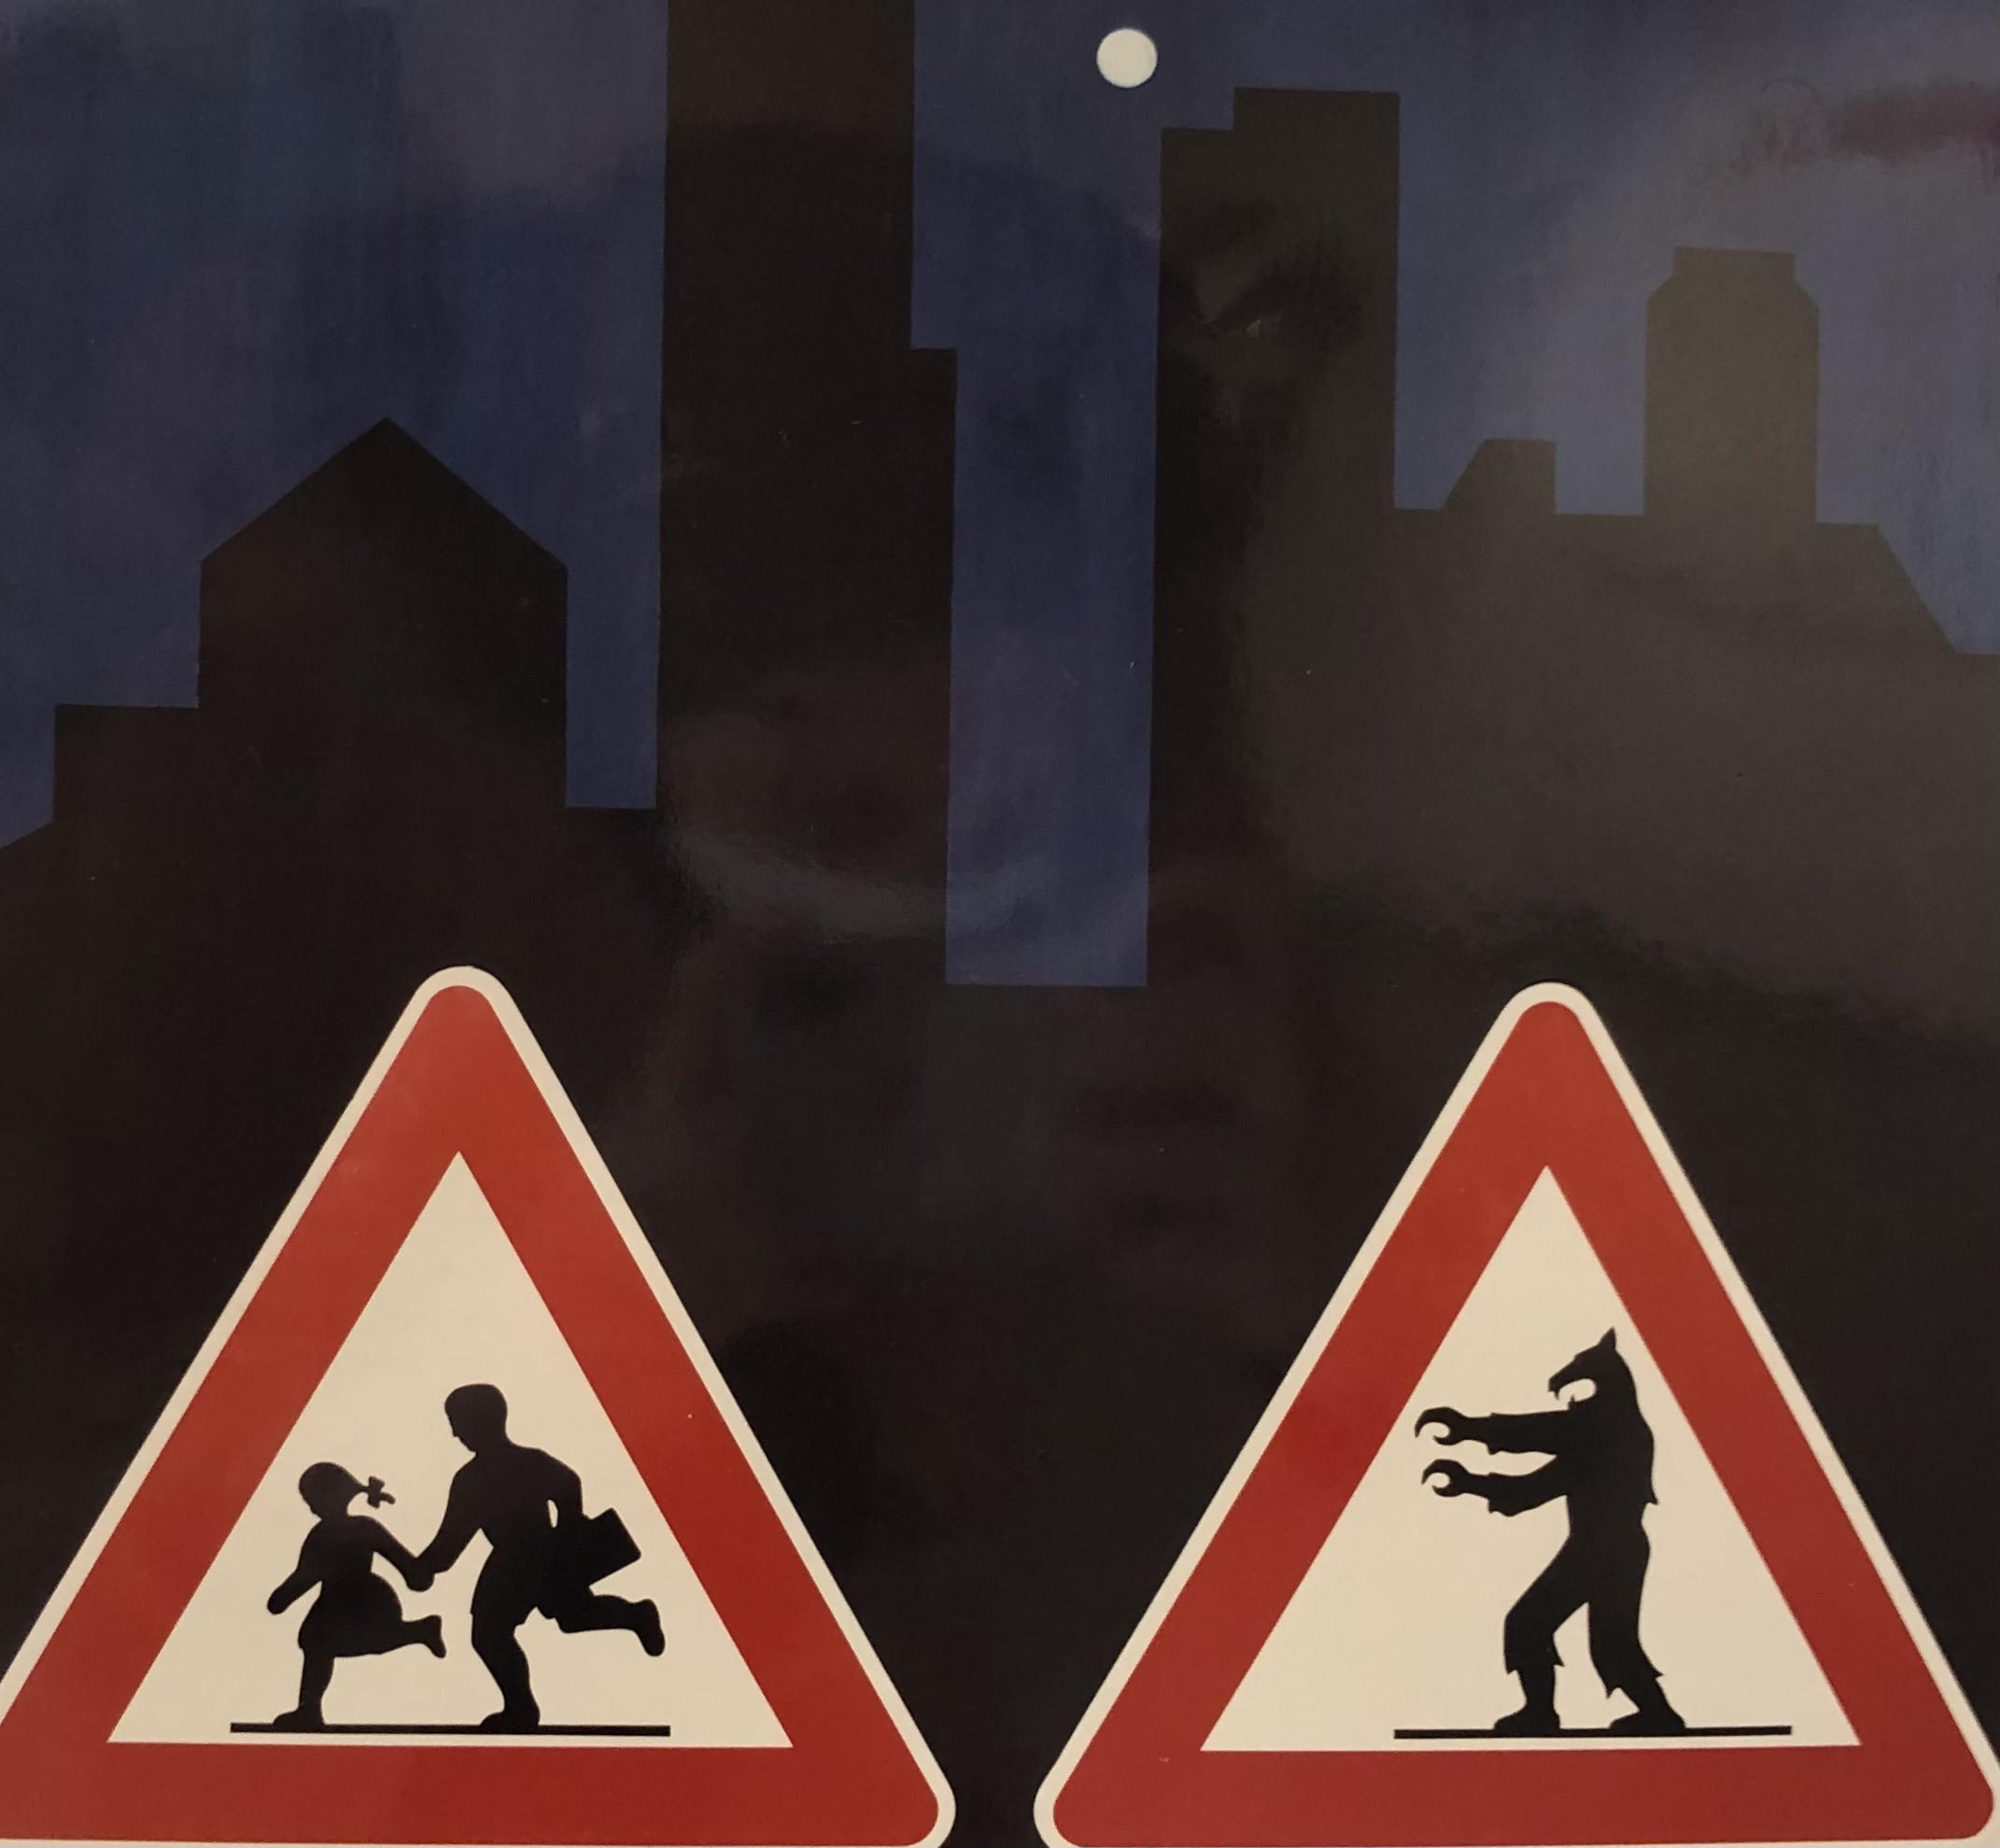 Francesco Garbelli, Pericolo di luna piena, 1988, cartelli segnaletica stradale, vernice spray, legno ricoperto di gesso colorato, 116x108 cm